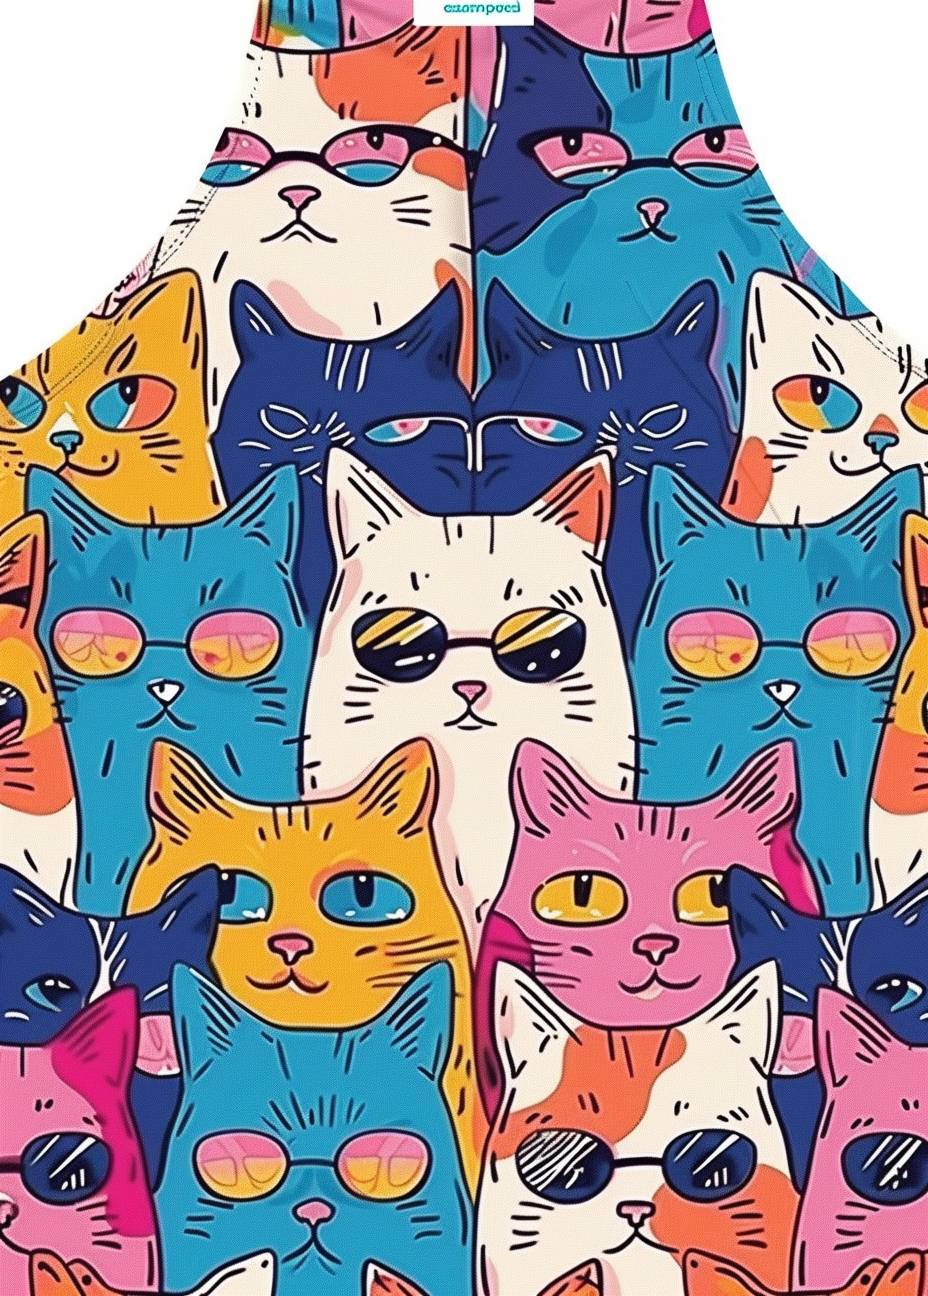 さまざまな表情や色のカラフルなカートゥーン猫の模様。ピンクや青など、サングラスを頭にかけています。